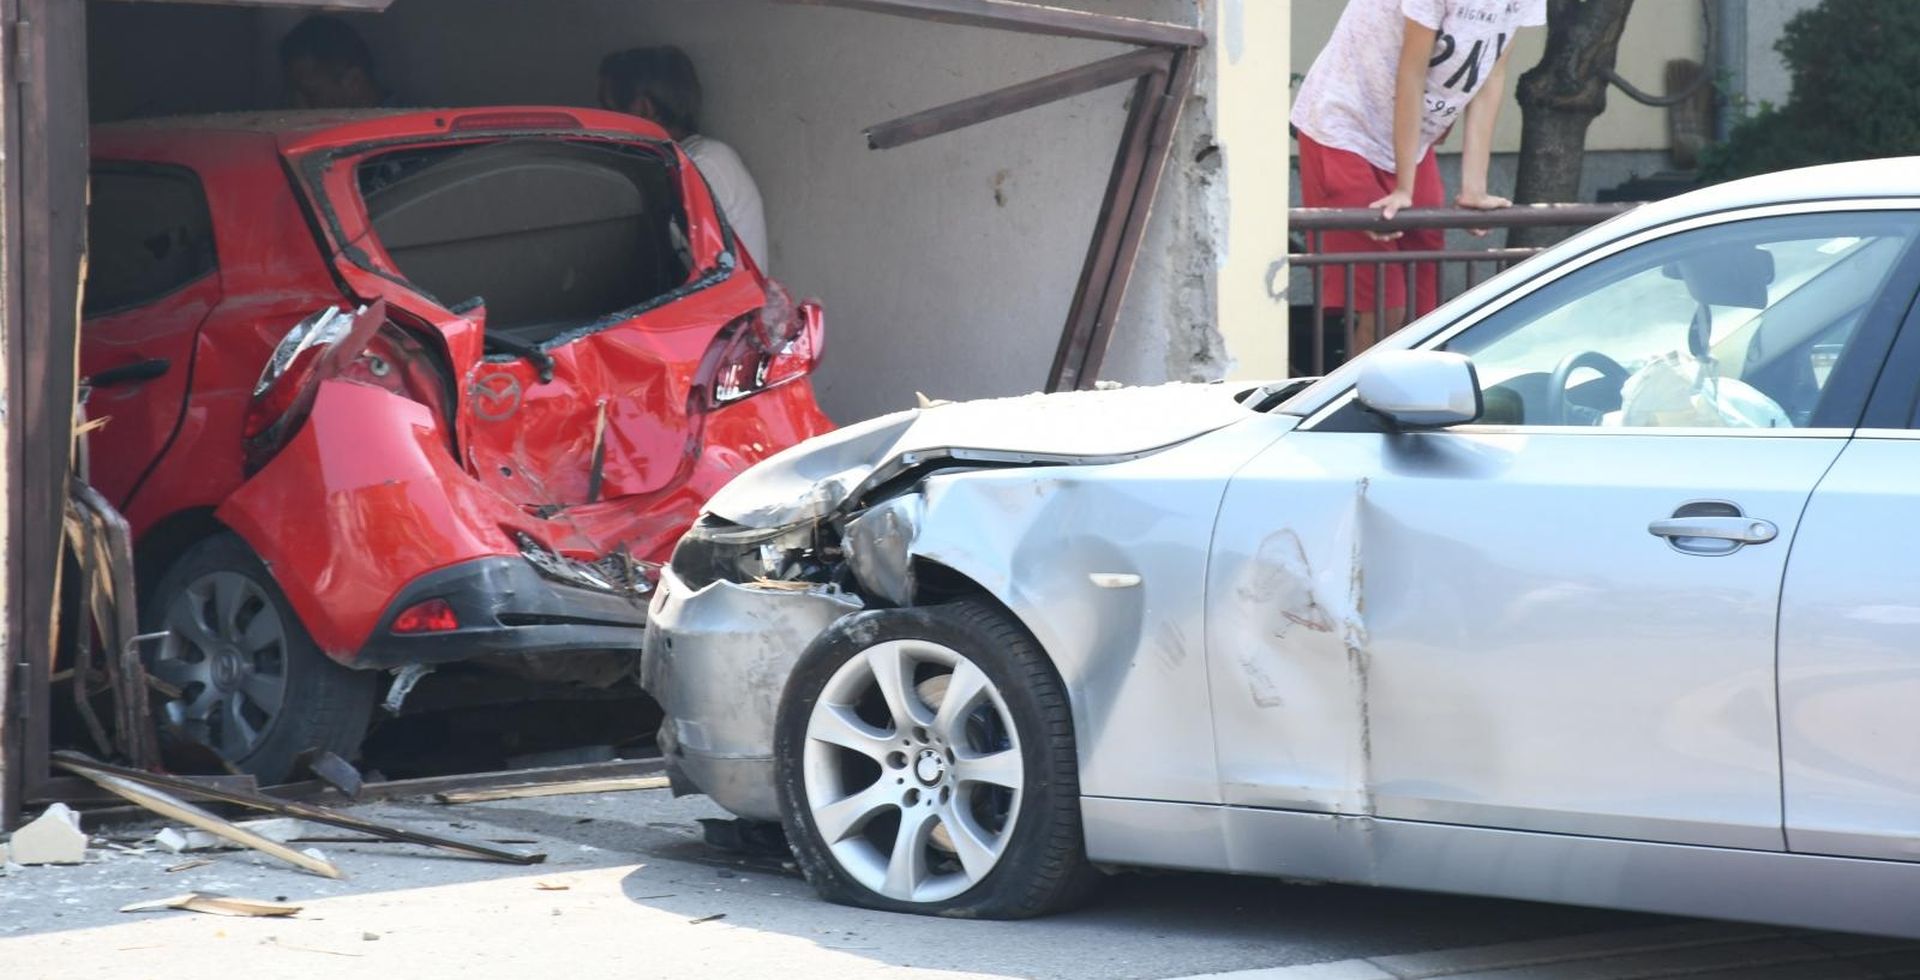 27.08.2019., Sisak - Zbog neprilagodjene brzine vozacica BMW-a u Sipusevoj ulici izgubila je kontrolu nad vozilom i udarila u grazu u kojoj je, probivsi vrata garaze, unistila parkiranu Mazdu.
Photo: Nikola Cutuk/PIXSELL